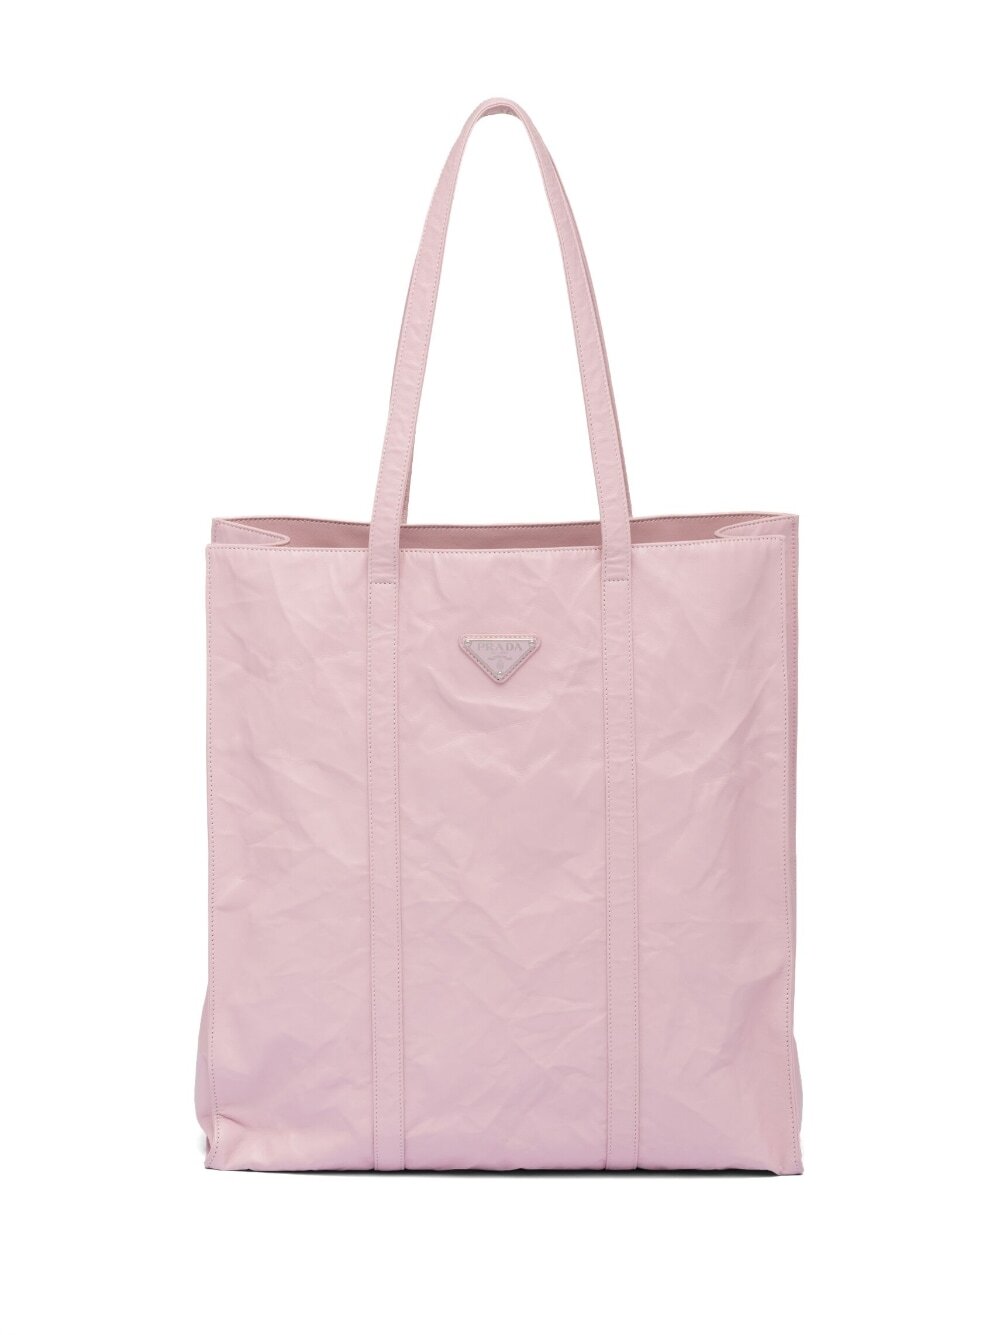 Prada medium crinkled tote bag - Pink